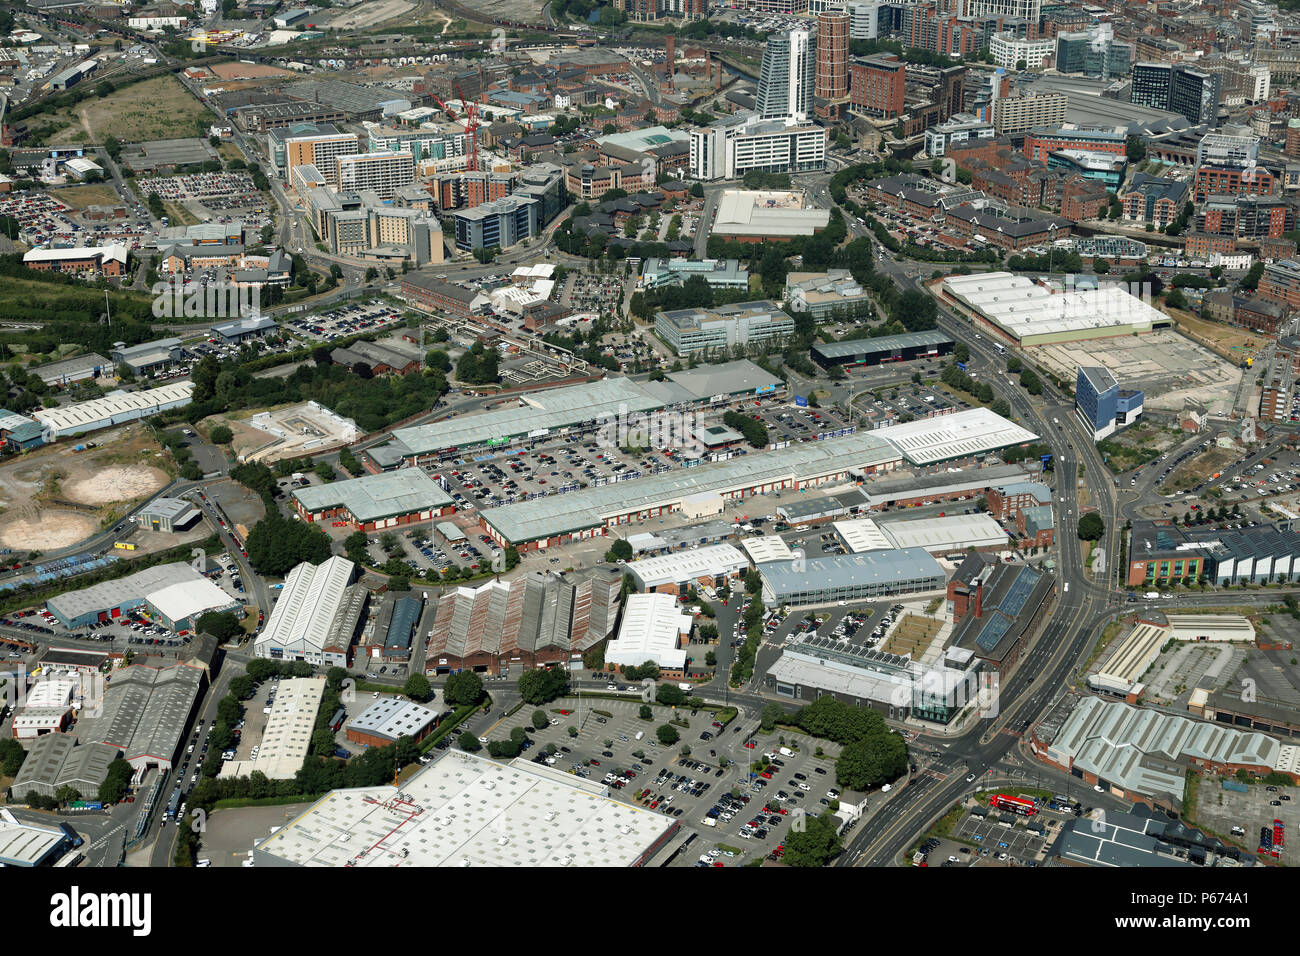 Vista aerea della zona Hunslet di Leeds con Crown Point Shopping Center prominente Foto Stock